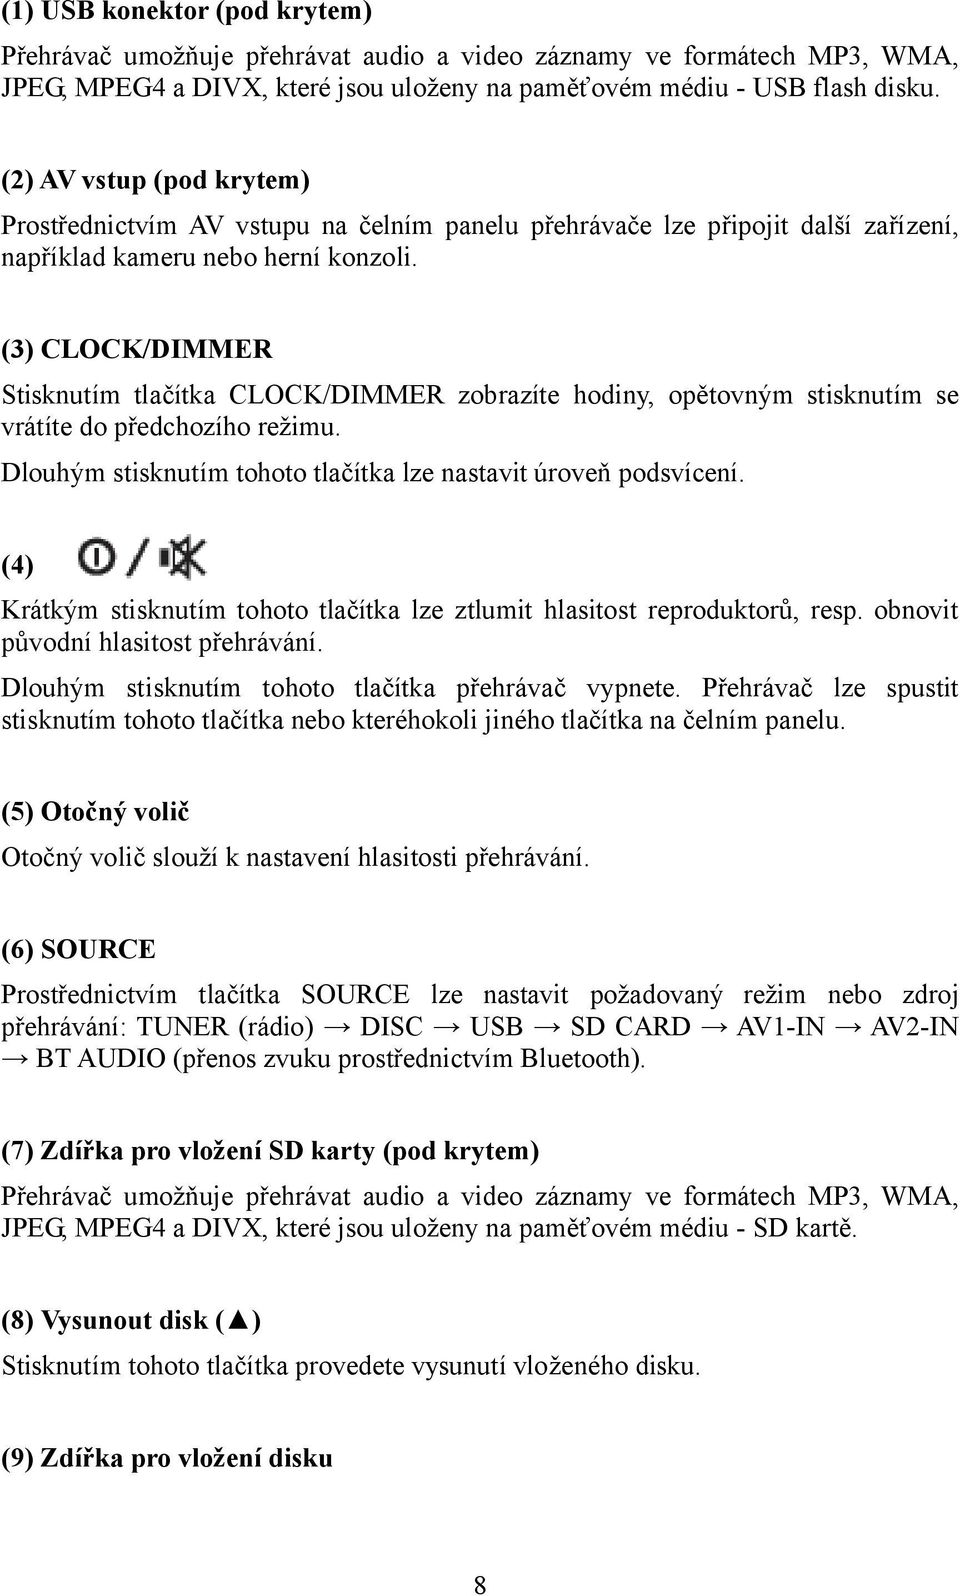 (3) CLOCK/DIMMER Stisknutím tlačítka CLOCK/DIMMER zobrazíte hodiny, opětovným stisknutím se vrátíte do předchozího režimu. Dlouhým stisknutím tohoto tlačítka lze nastavit úroveň podsvícení.